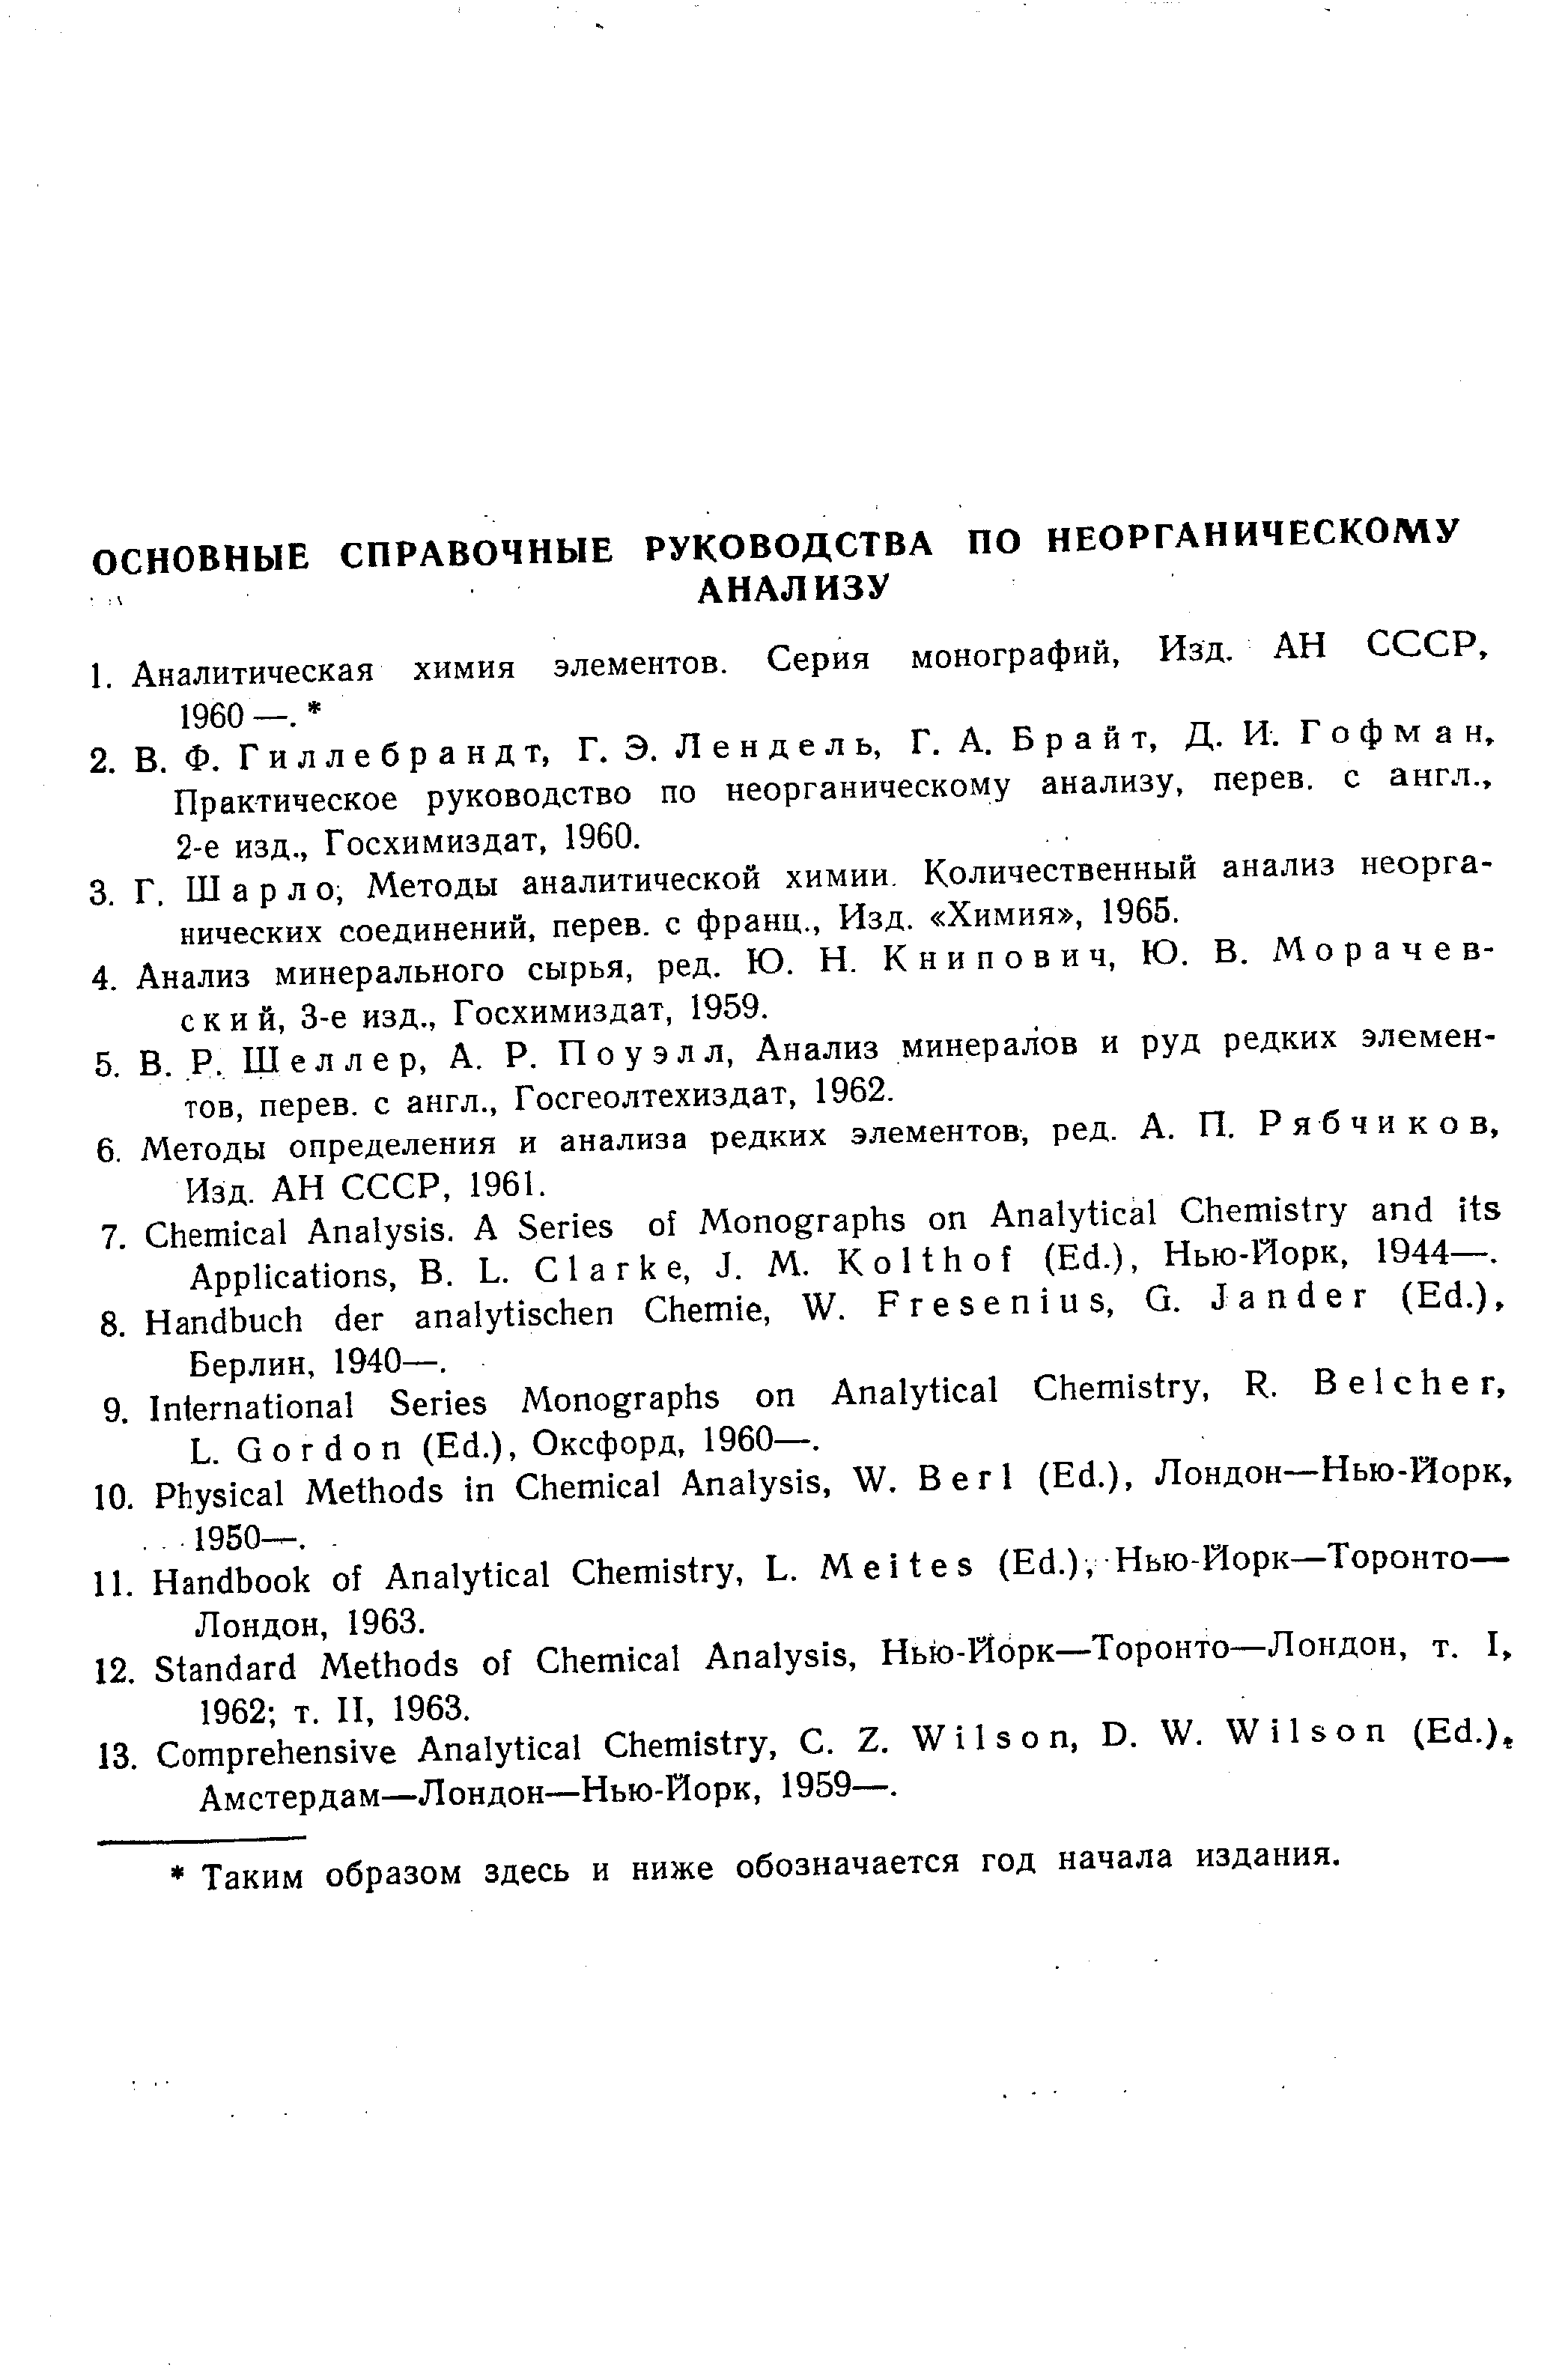 Практическое руководство по неорганическому анализу, перев. с англ., 2-е изд., Госхимиздат, 1960.